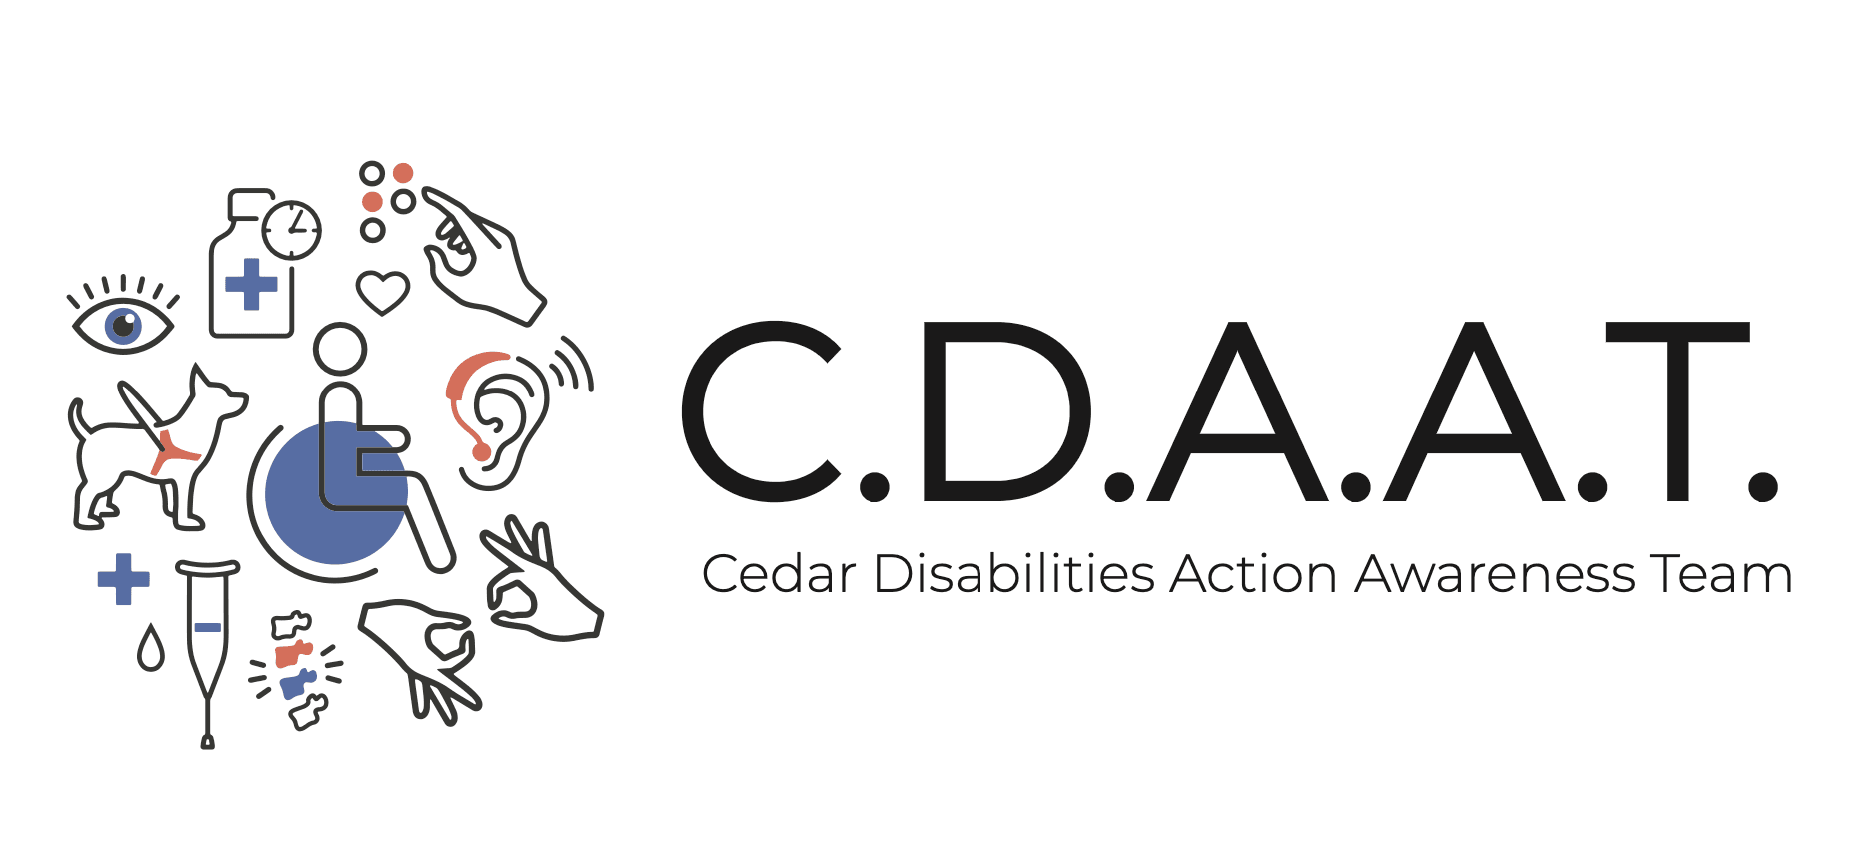 Cedar Disabilities Action Awareness Team (C.D.A.A.T.)